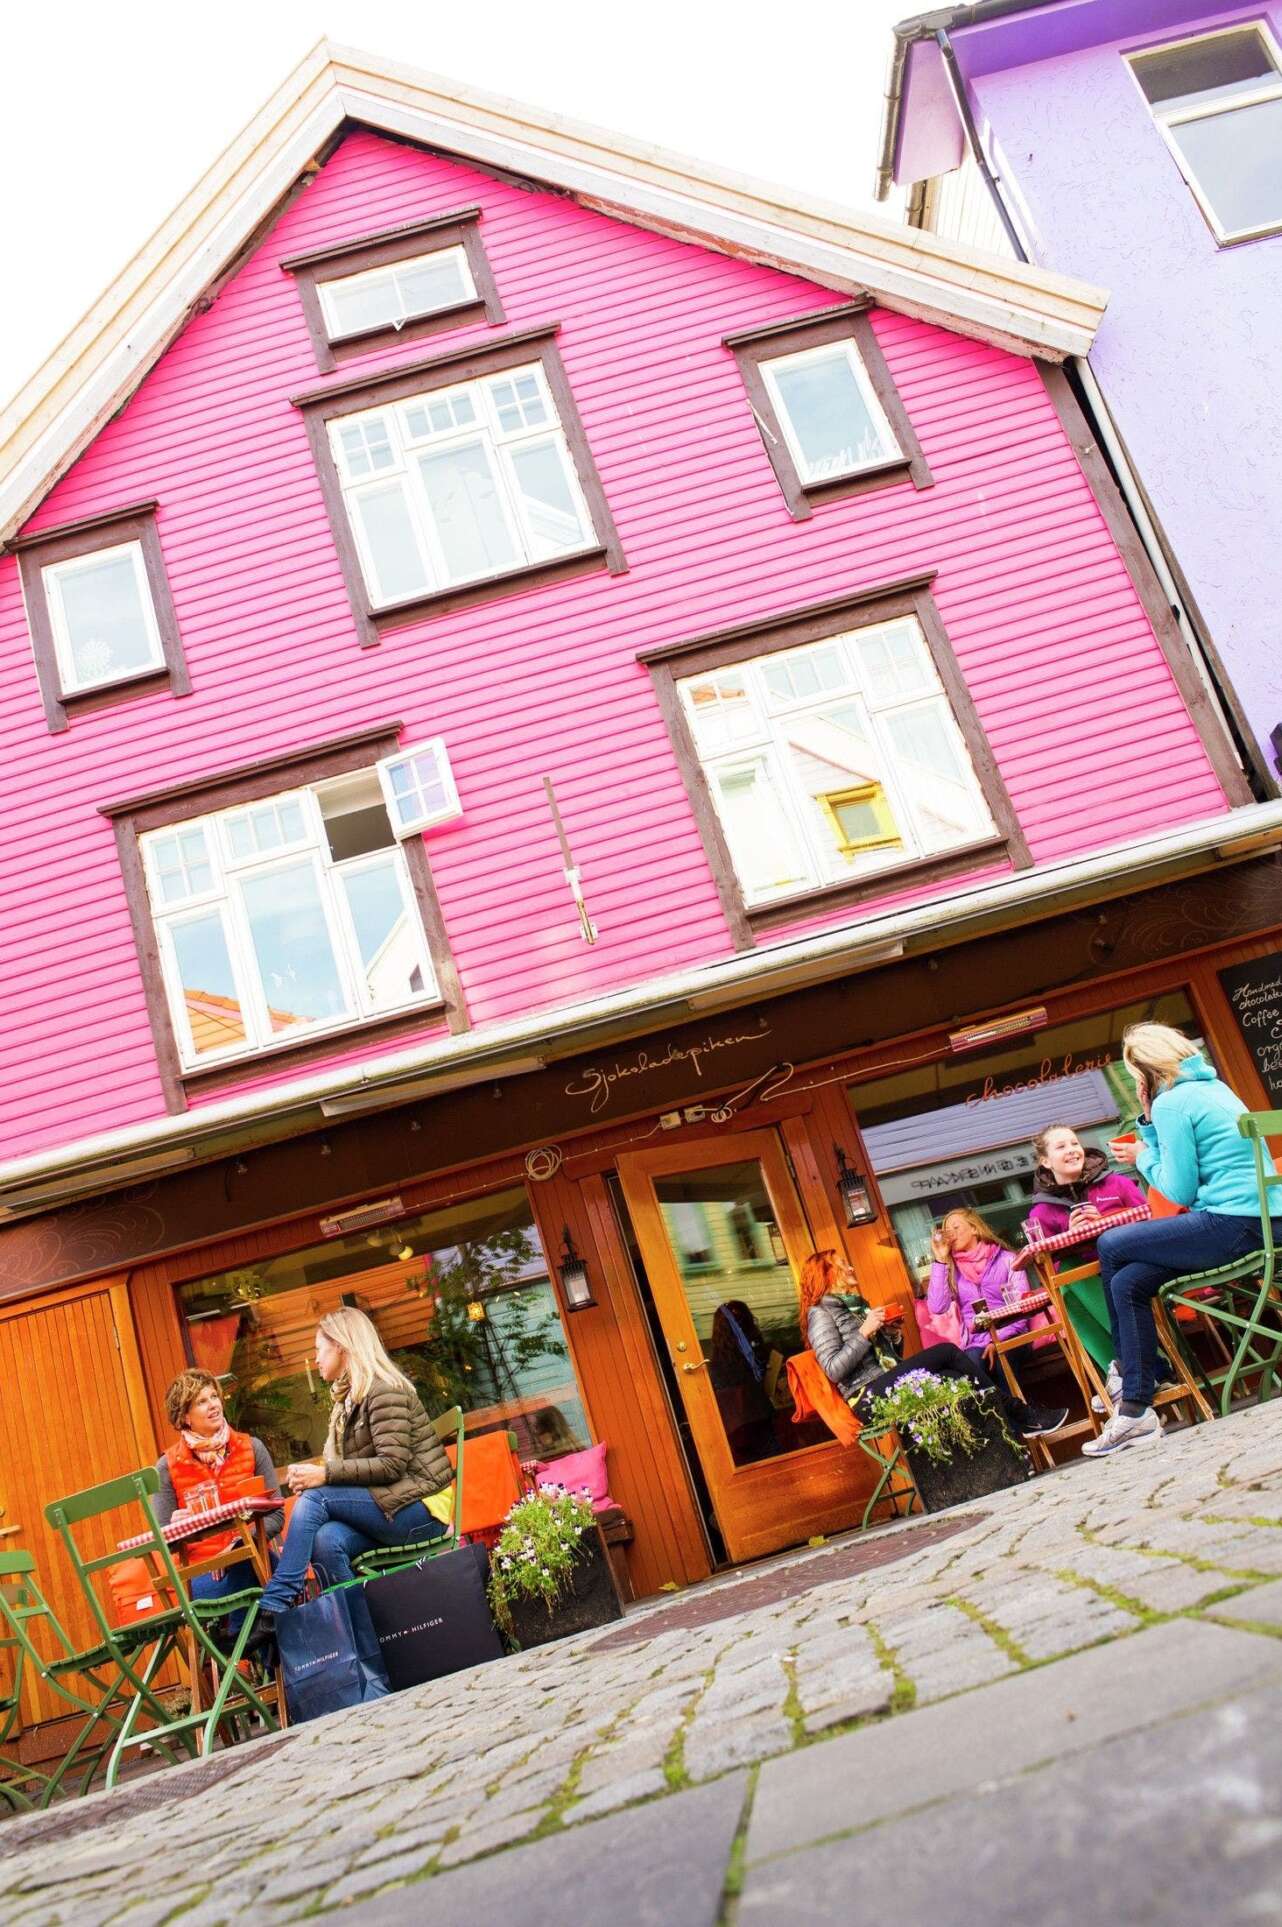 La calle Ovre Holmegate estaÌ plagada de cafeÌs y encantadoras tiendas. Foto: Innovation Norway.